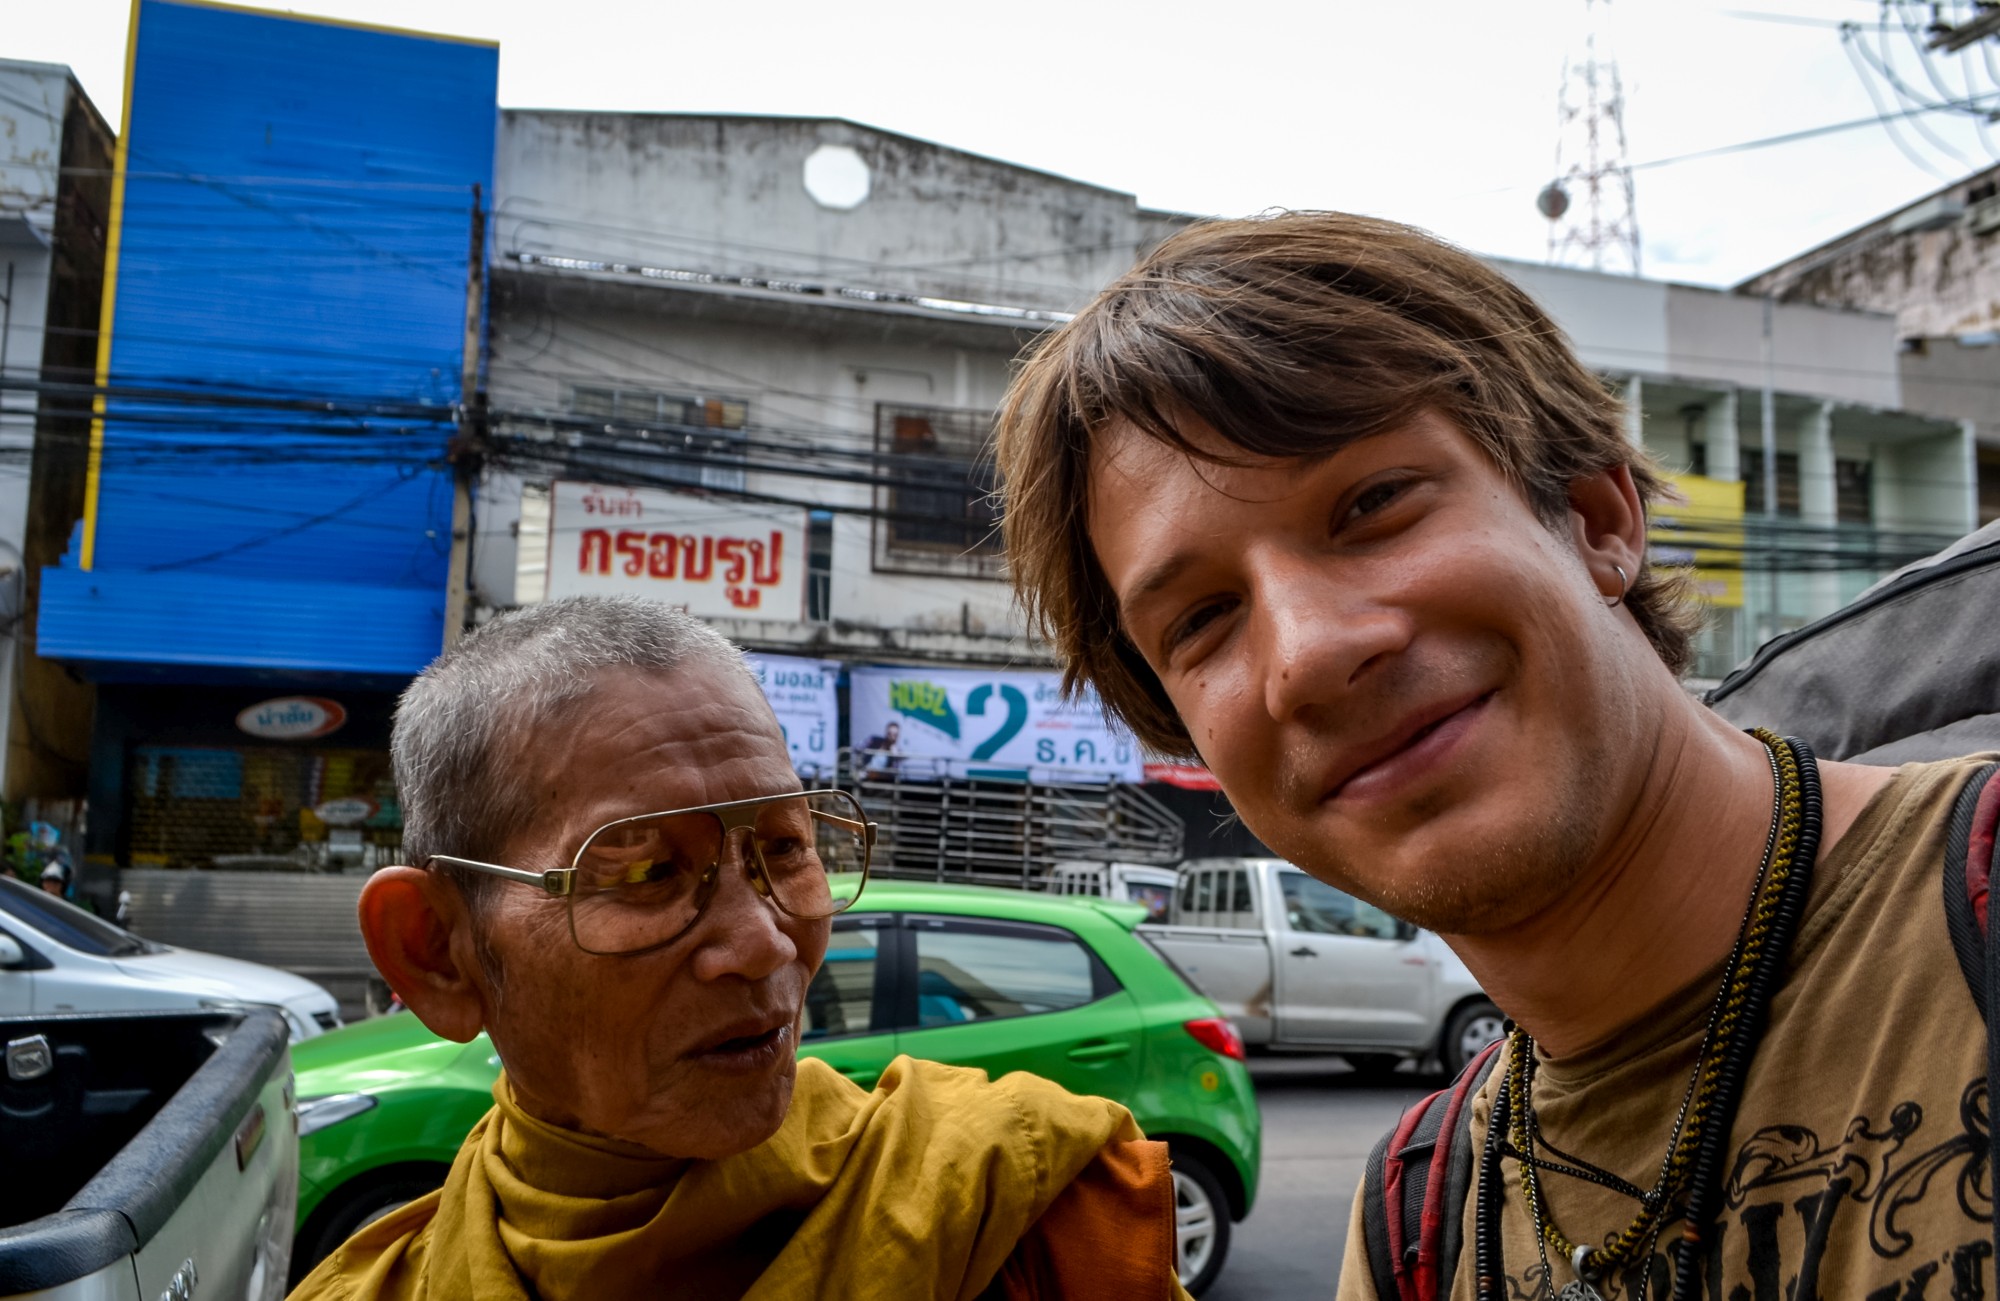 Азия. Автостопом в Индонезию и обратно. День 60. Рынки, люди и храмы Таиланда